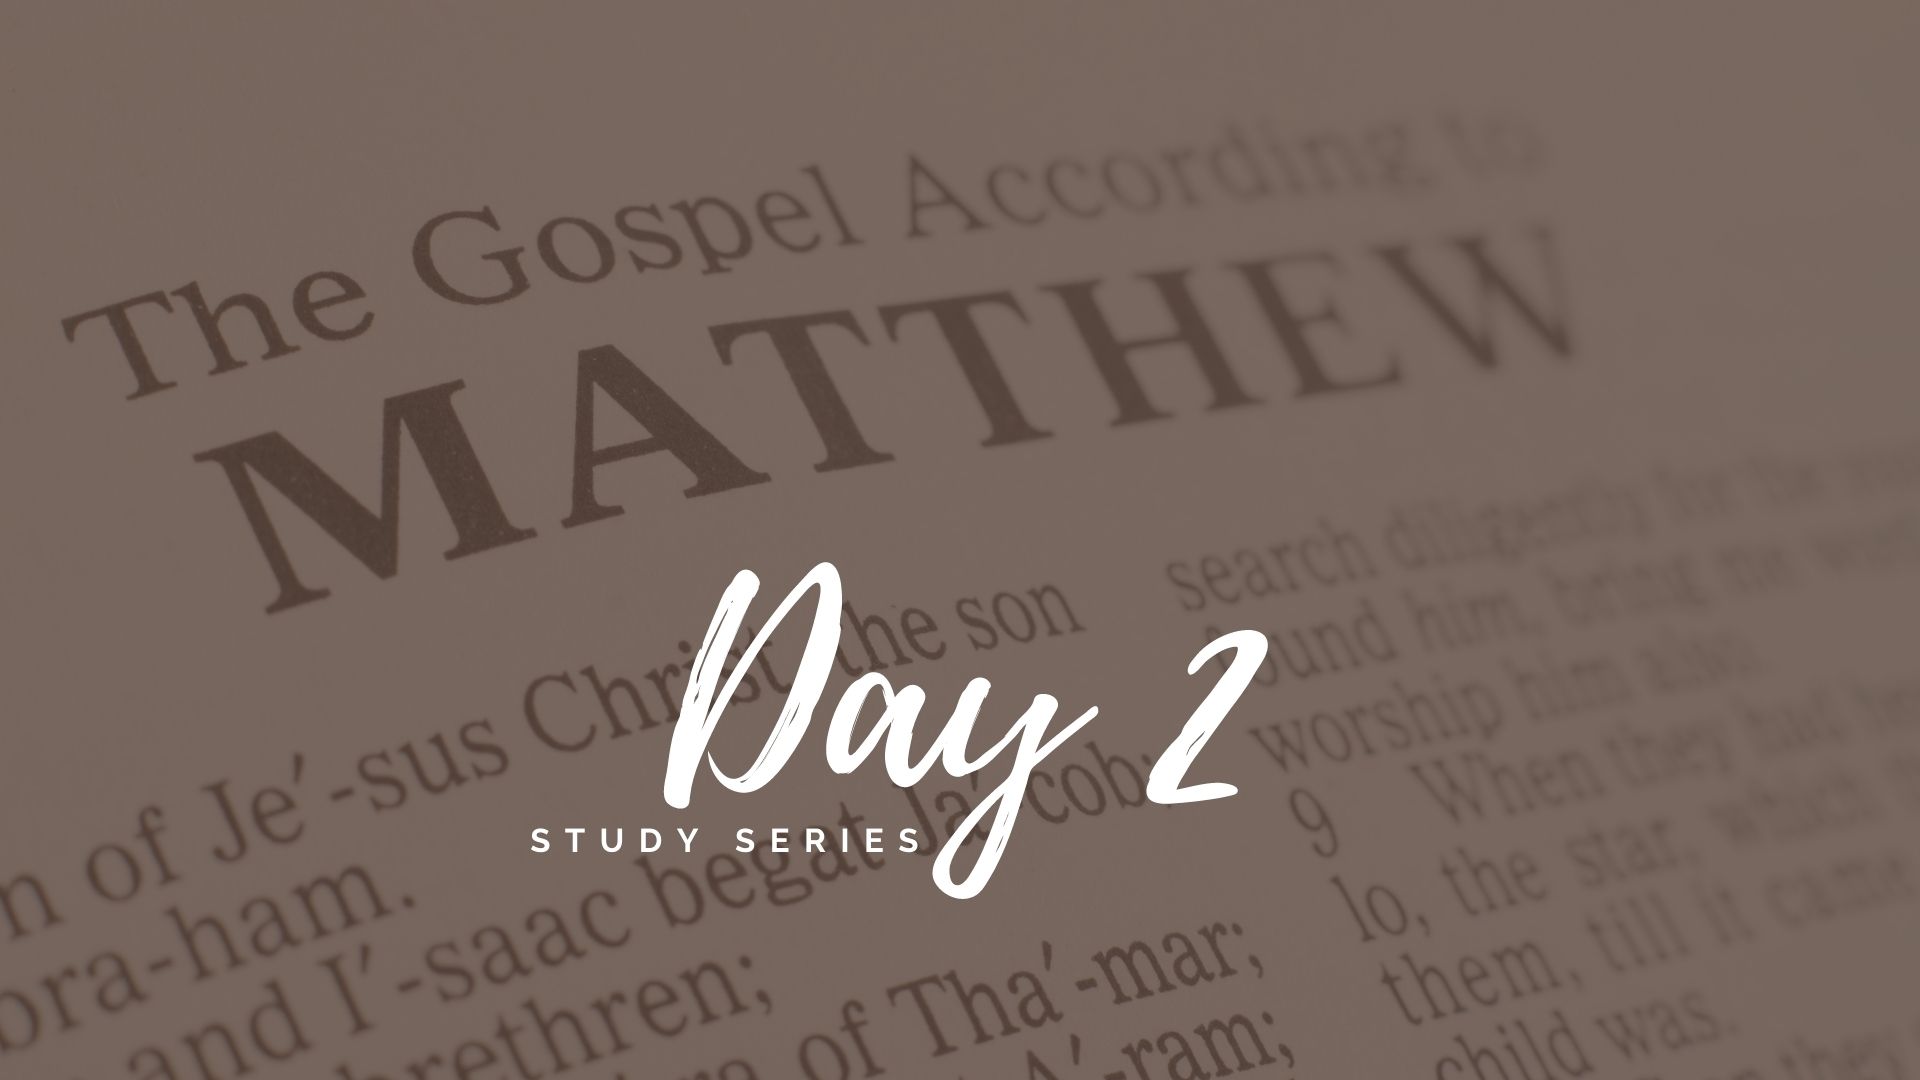 The Gospel of Matthew Day 2